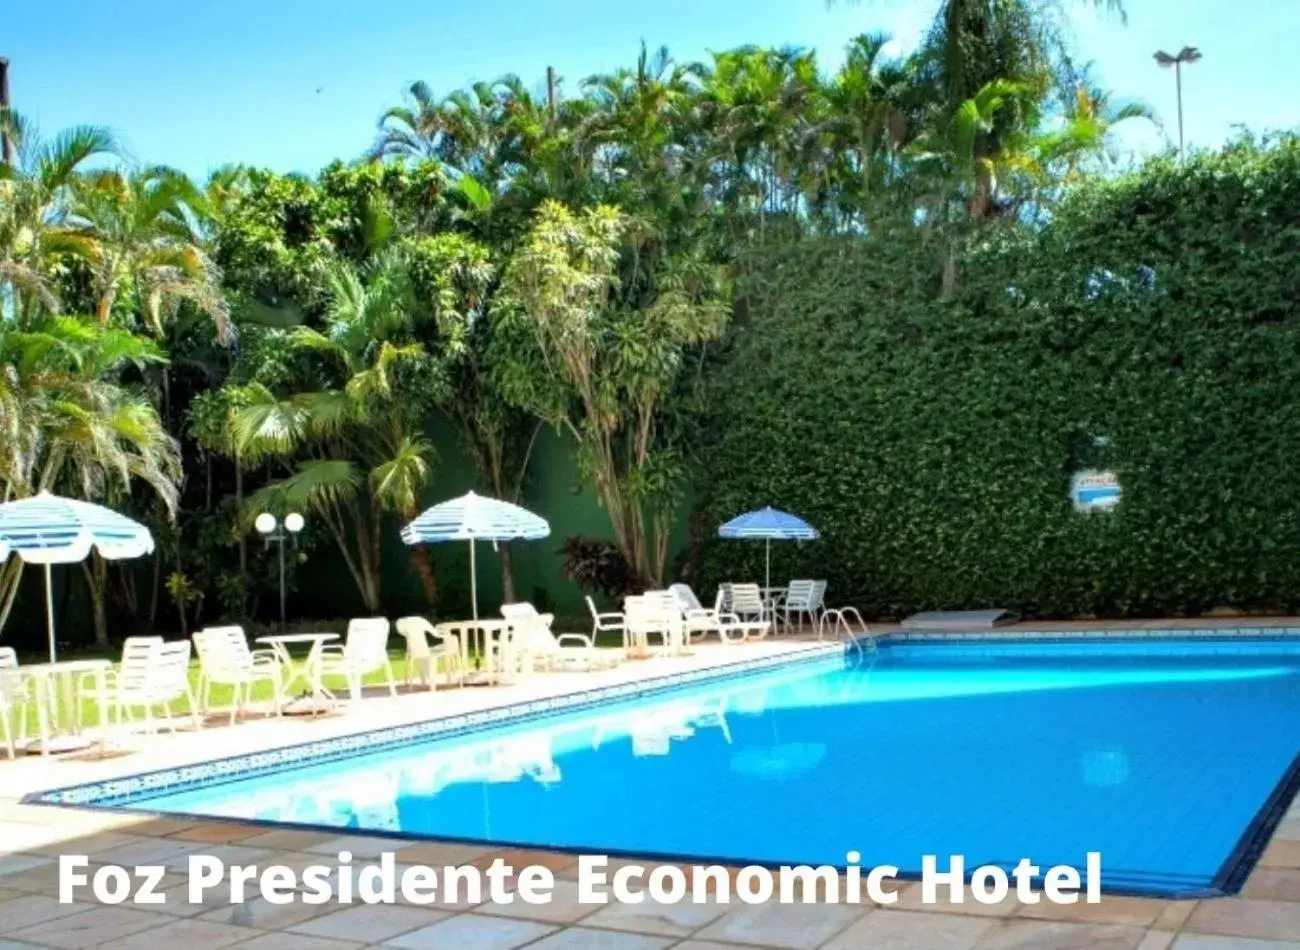 Property building in Foz Presidente Economic Hotel